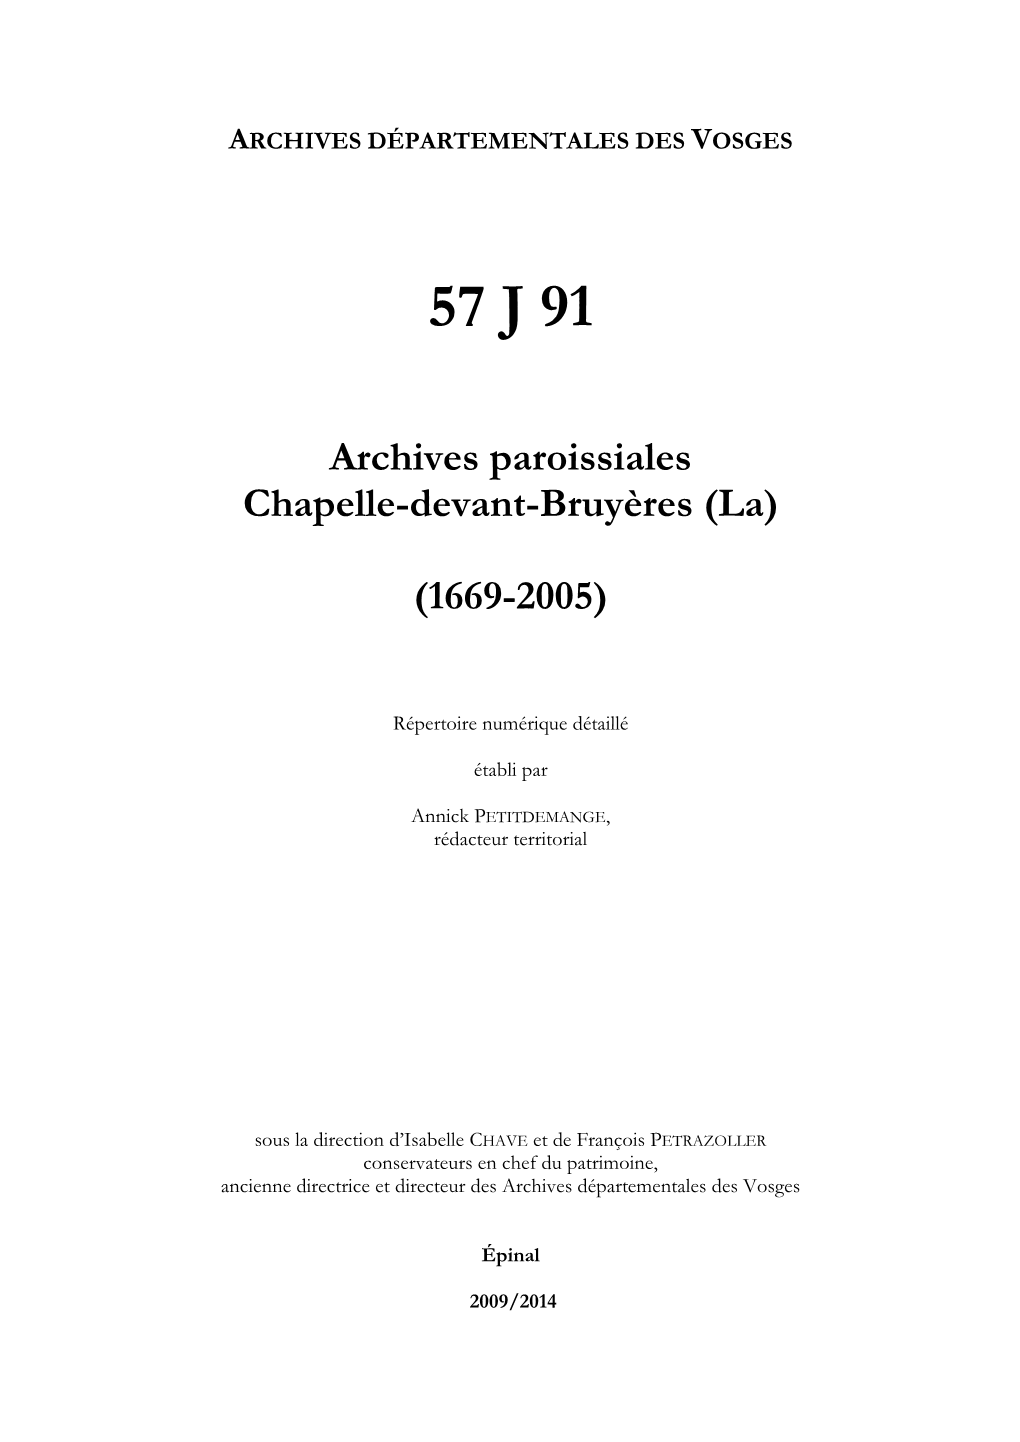 Archives De La Paroisse De La Chapelle-Devant-Bruyères.Pdf